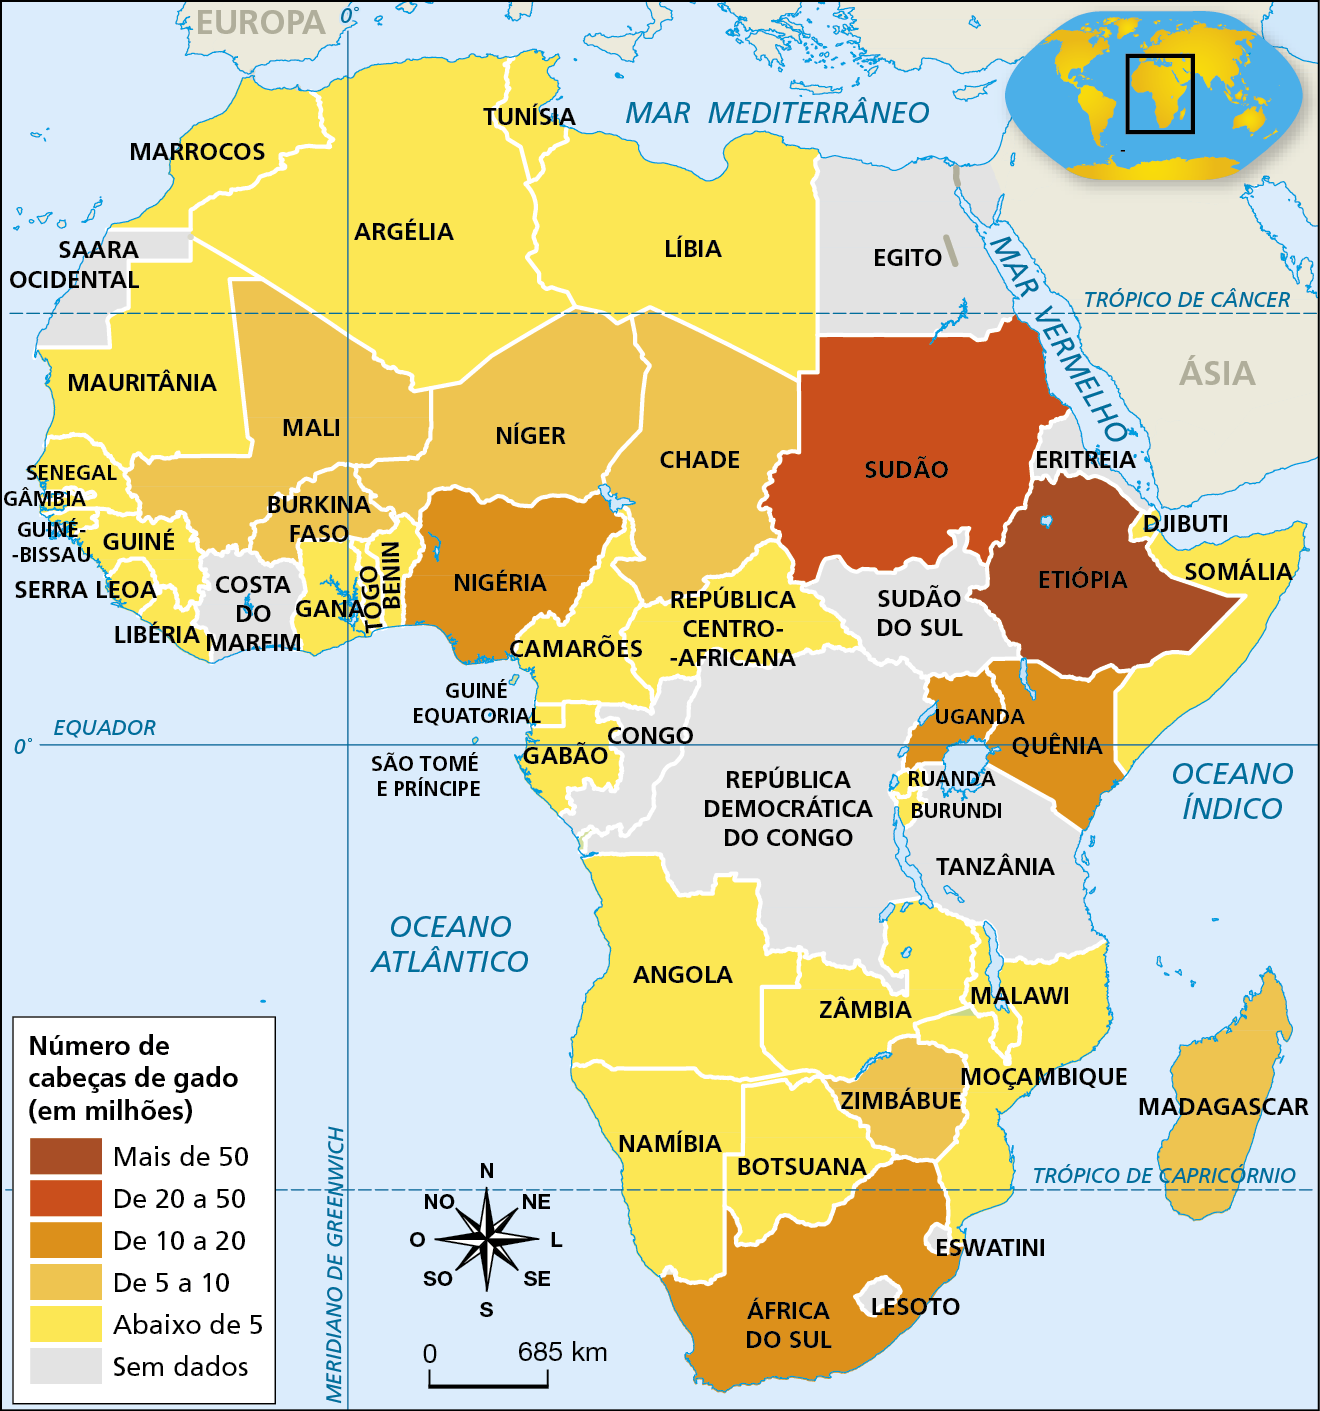 Mapa. África: Rebanho bovino (2020). 
Mapa representando o número absoluto de cabeças de gado dos países do continente africano.
Número de cabeças de gado (em milhões). 
Mais de 50 milhões: Etiópia; de 20 a 50 milhões: Sudão; de 10 a 20 milhões: Nígerioa, Uganda, Quênia, África do Sul; de 5 a 10 milhões: Mali, Burkina Faso, Níger, Chade, Zimbábue, Madagascar; abaixo de 5 milhões: Libéria, Serra Leoa, Guiné, Senegal, Mauritânia, Marrocos, Argélia, Tunísia, Líbia, Camarões, Gabão, Angola, Namíbia, Zâmbia, Botsuana, Moçambique, Somália, República Centro-Africana. 
Sem dados: República Democrática do Congo, Congo, Tanzânia, Sudão do Sul, Egito, Costa do Marfim, Eritreia.
Na parte inferior esquerda, rosa dos ventos e escala de 0 a 685 quilômetros.